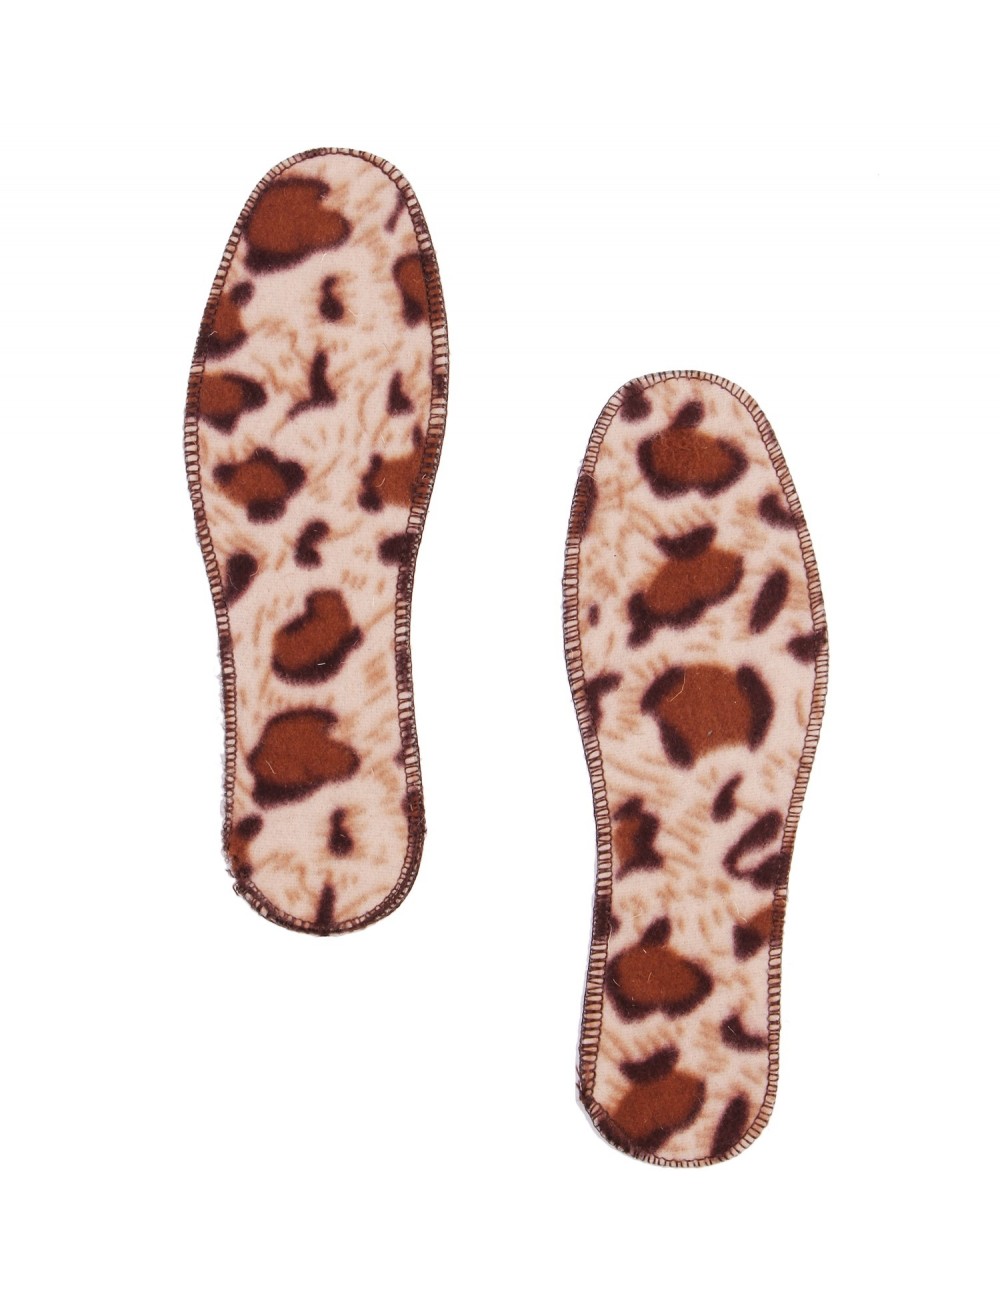 Стельки обувные "Леопард"